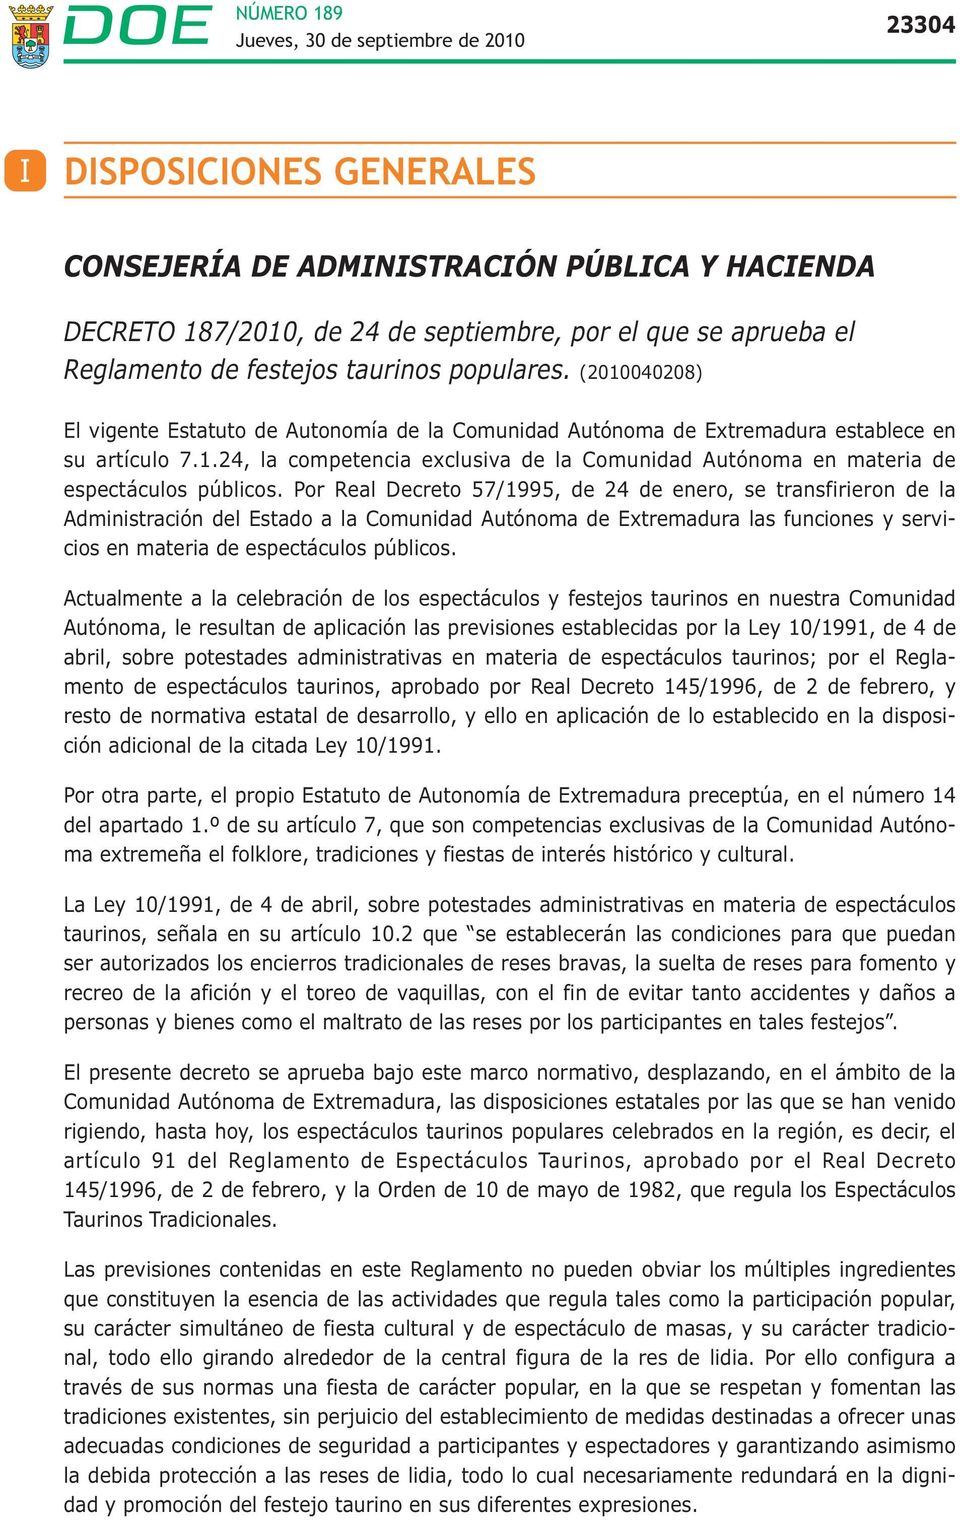 Por Real Decreto 57/1995, de 24 de enero, se transfirieron de la Administración del Estado a la Comunidad Autónoma de Extremadura las funciones y servicios en materia de espectáculos públicos.